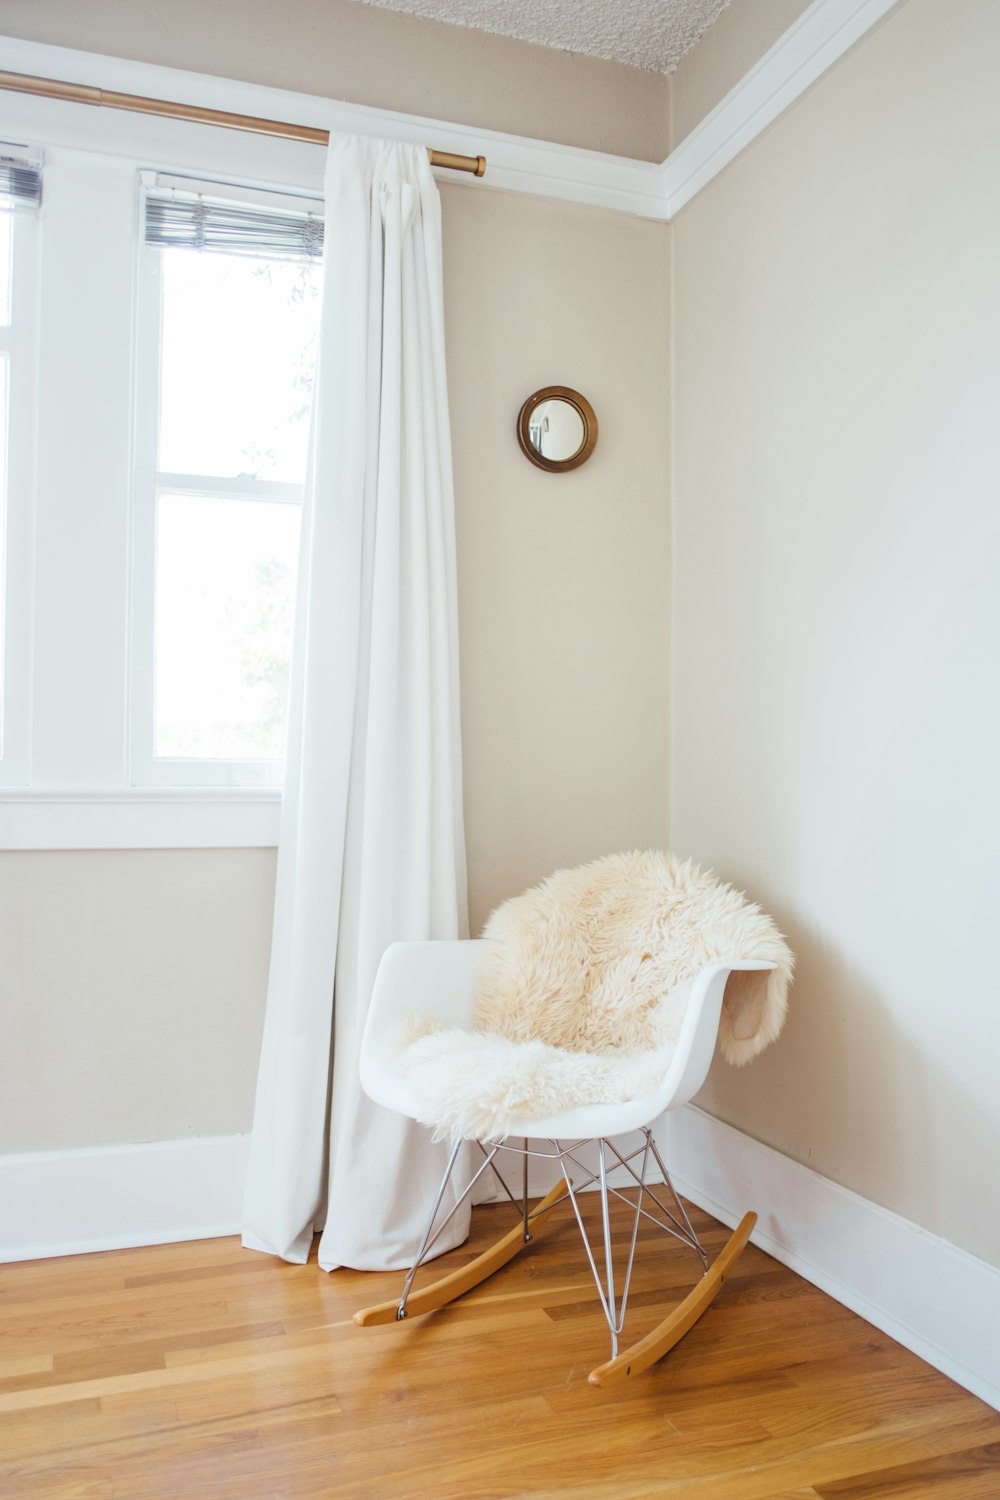 fauteuil à bascule blanc et marron près du mur peint en blanc et rideau de fenêtre blanc